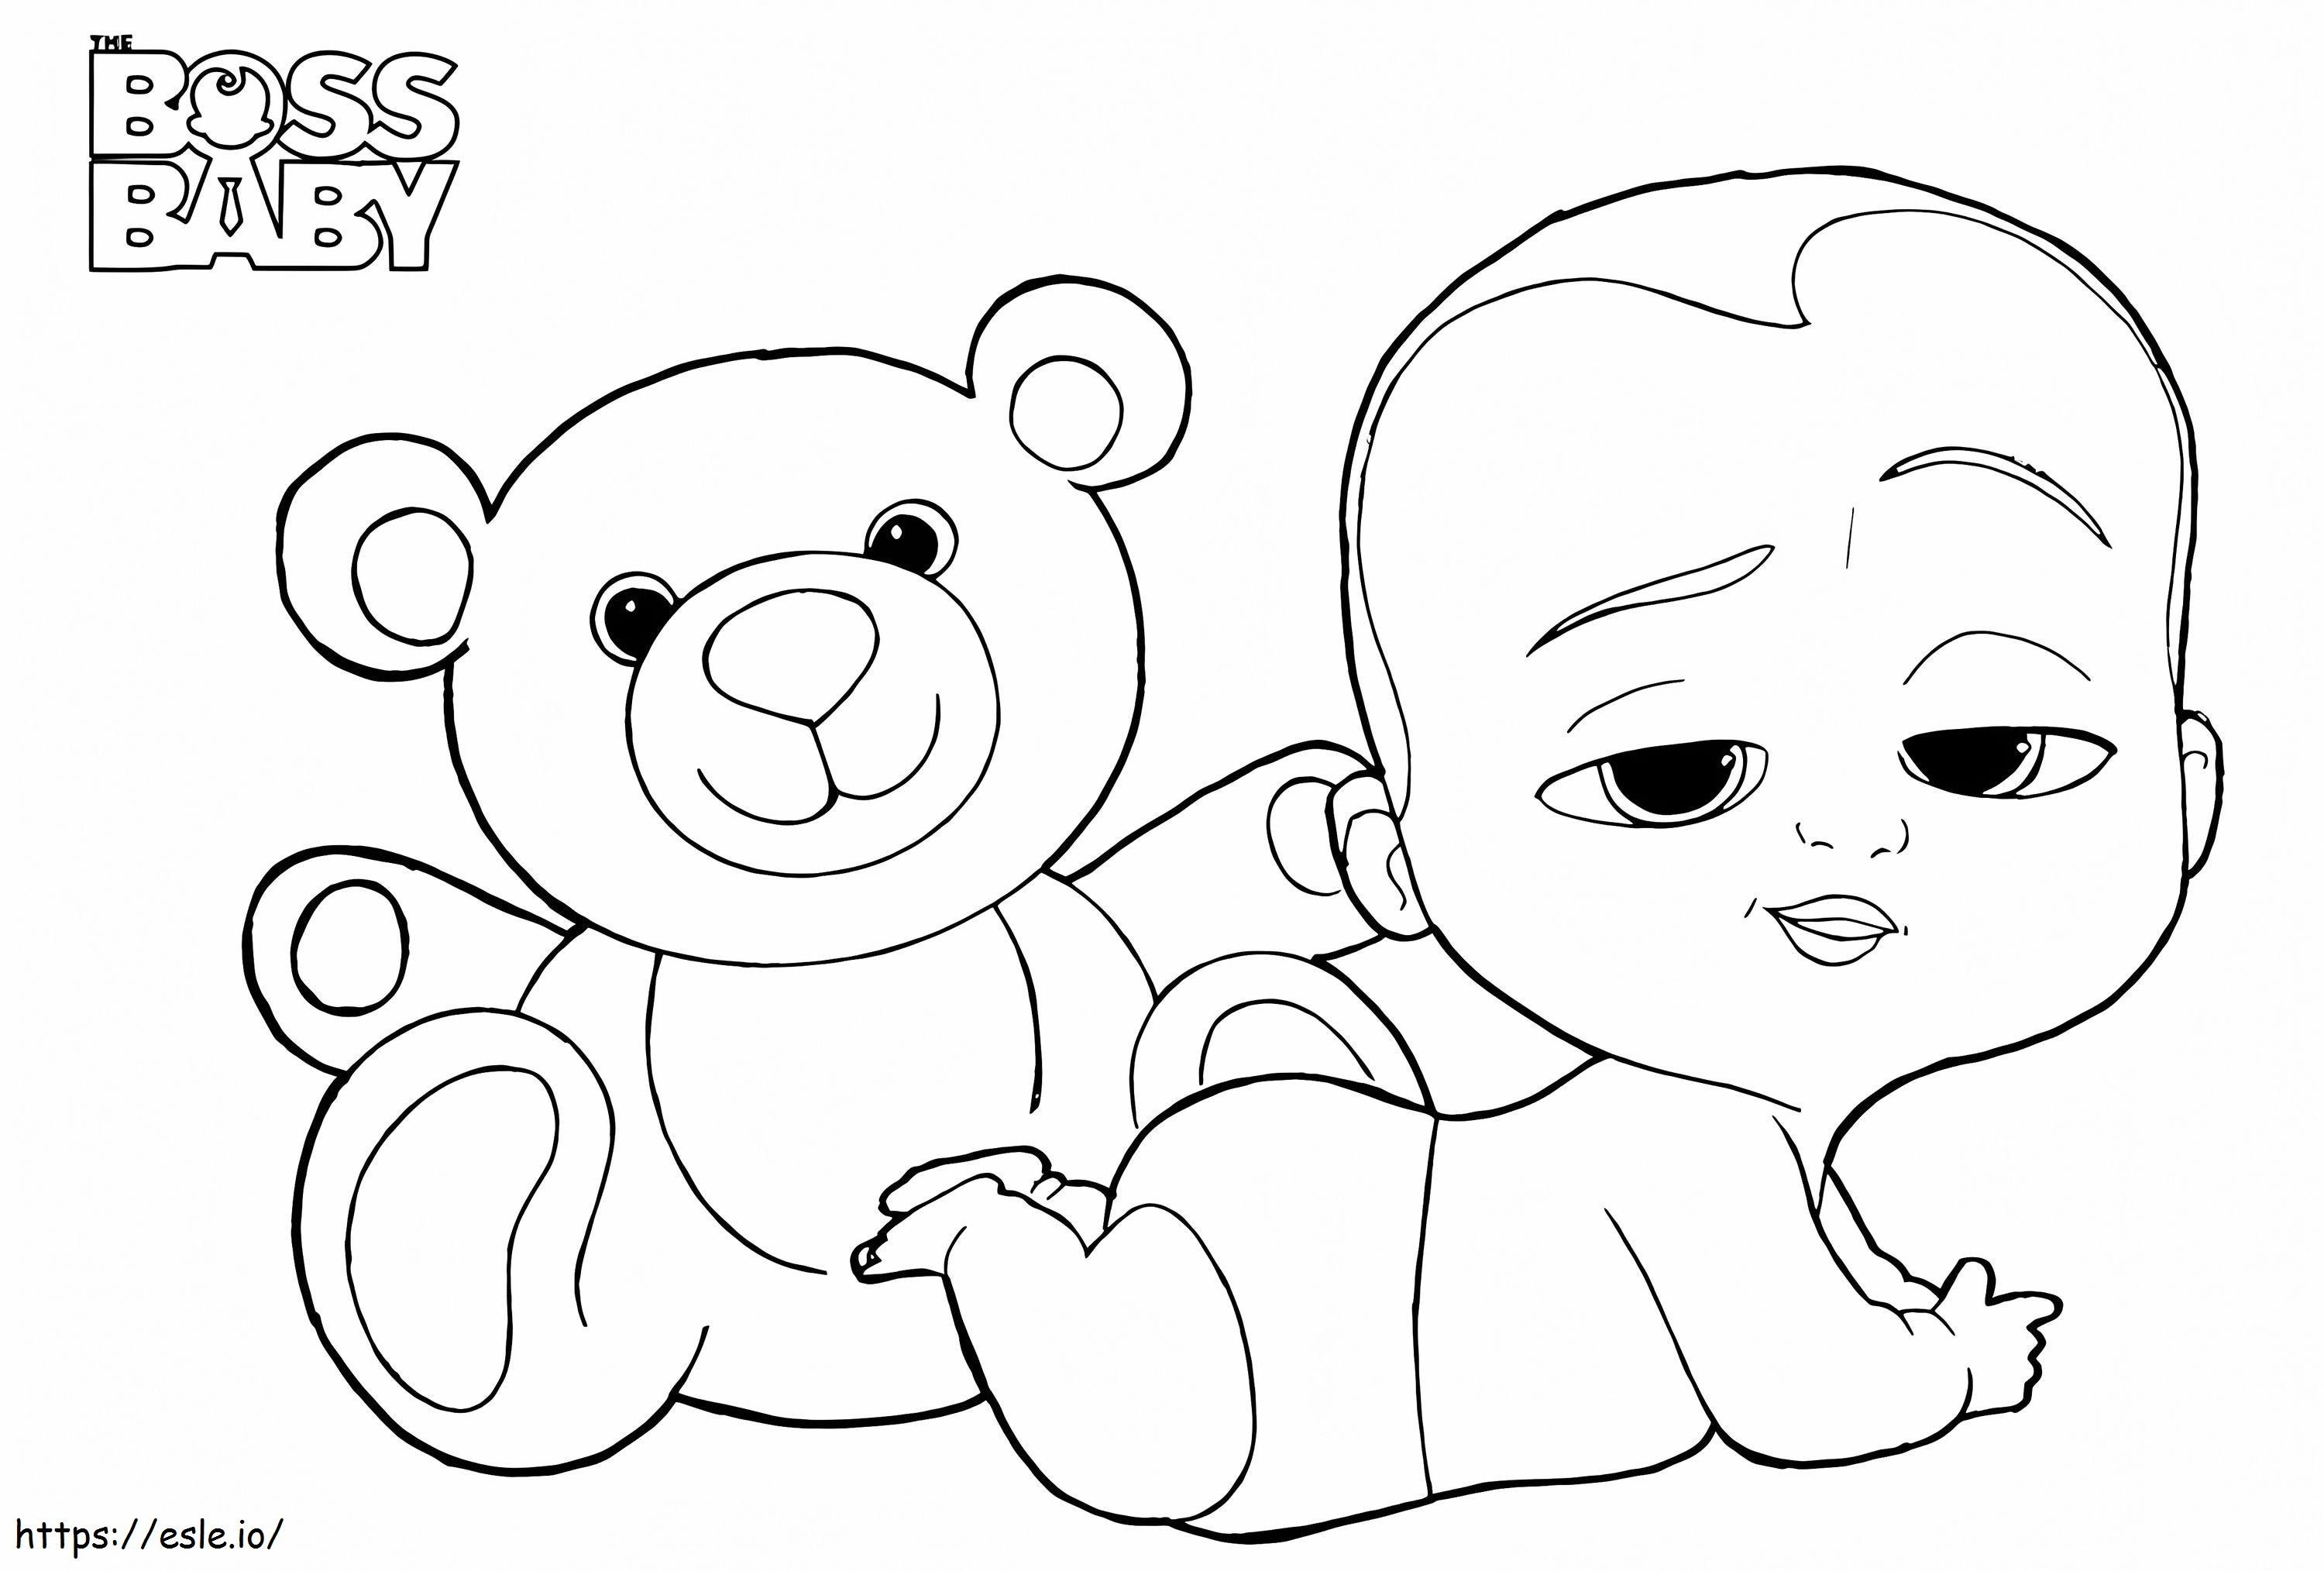 _Boss Baby und Teddy A4 ausmalbilder